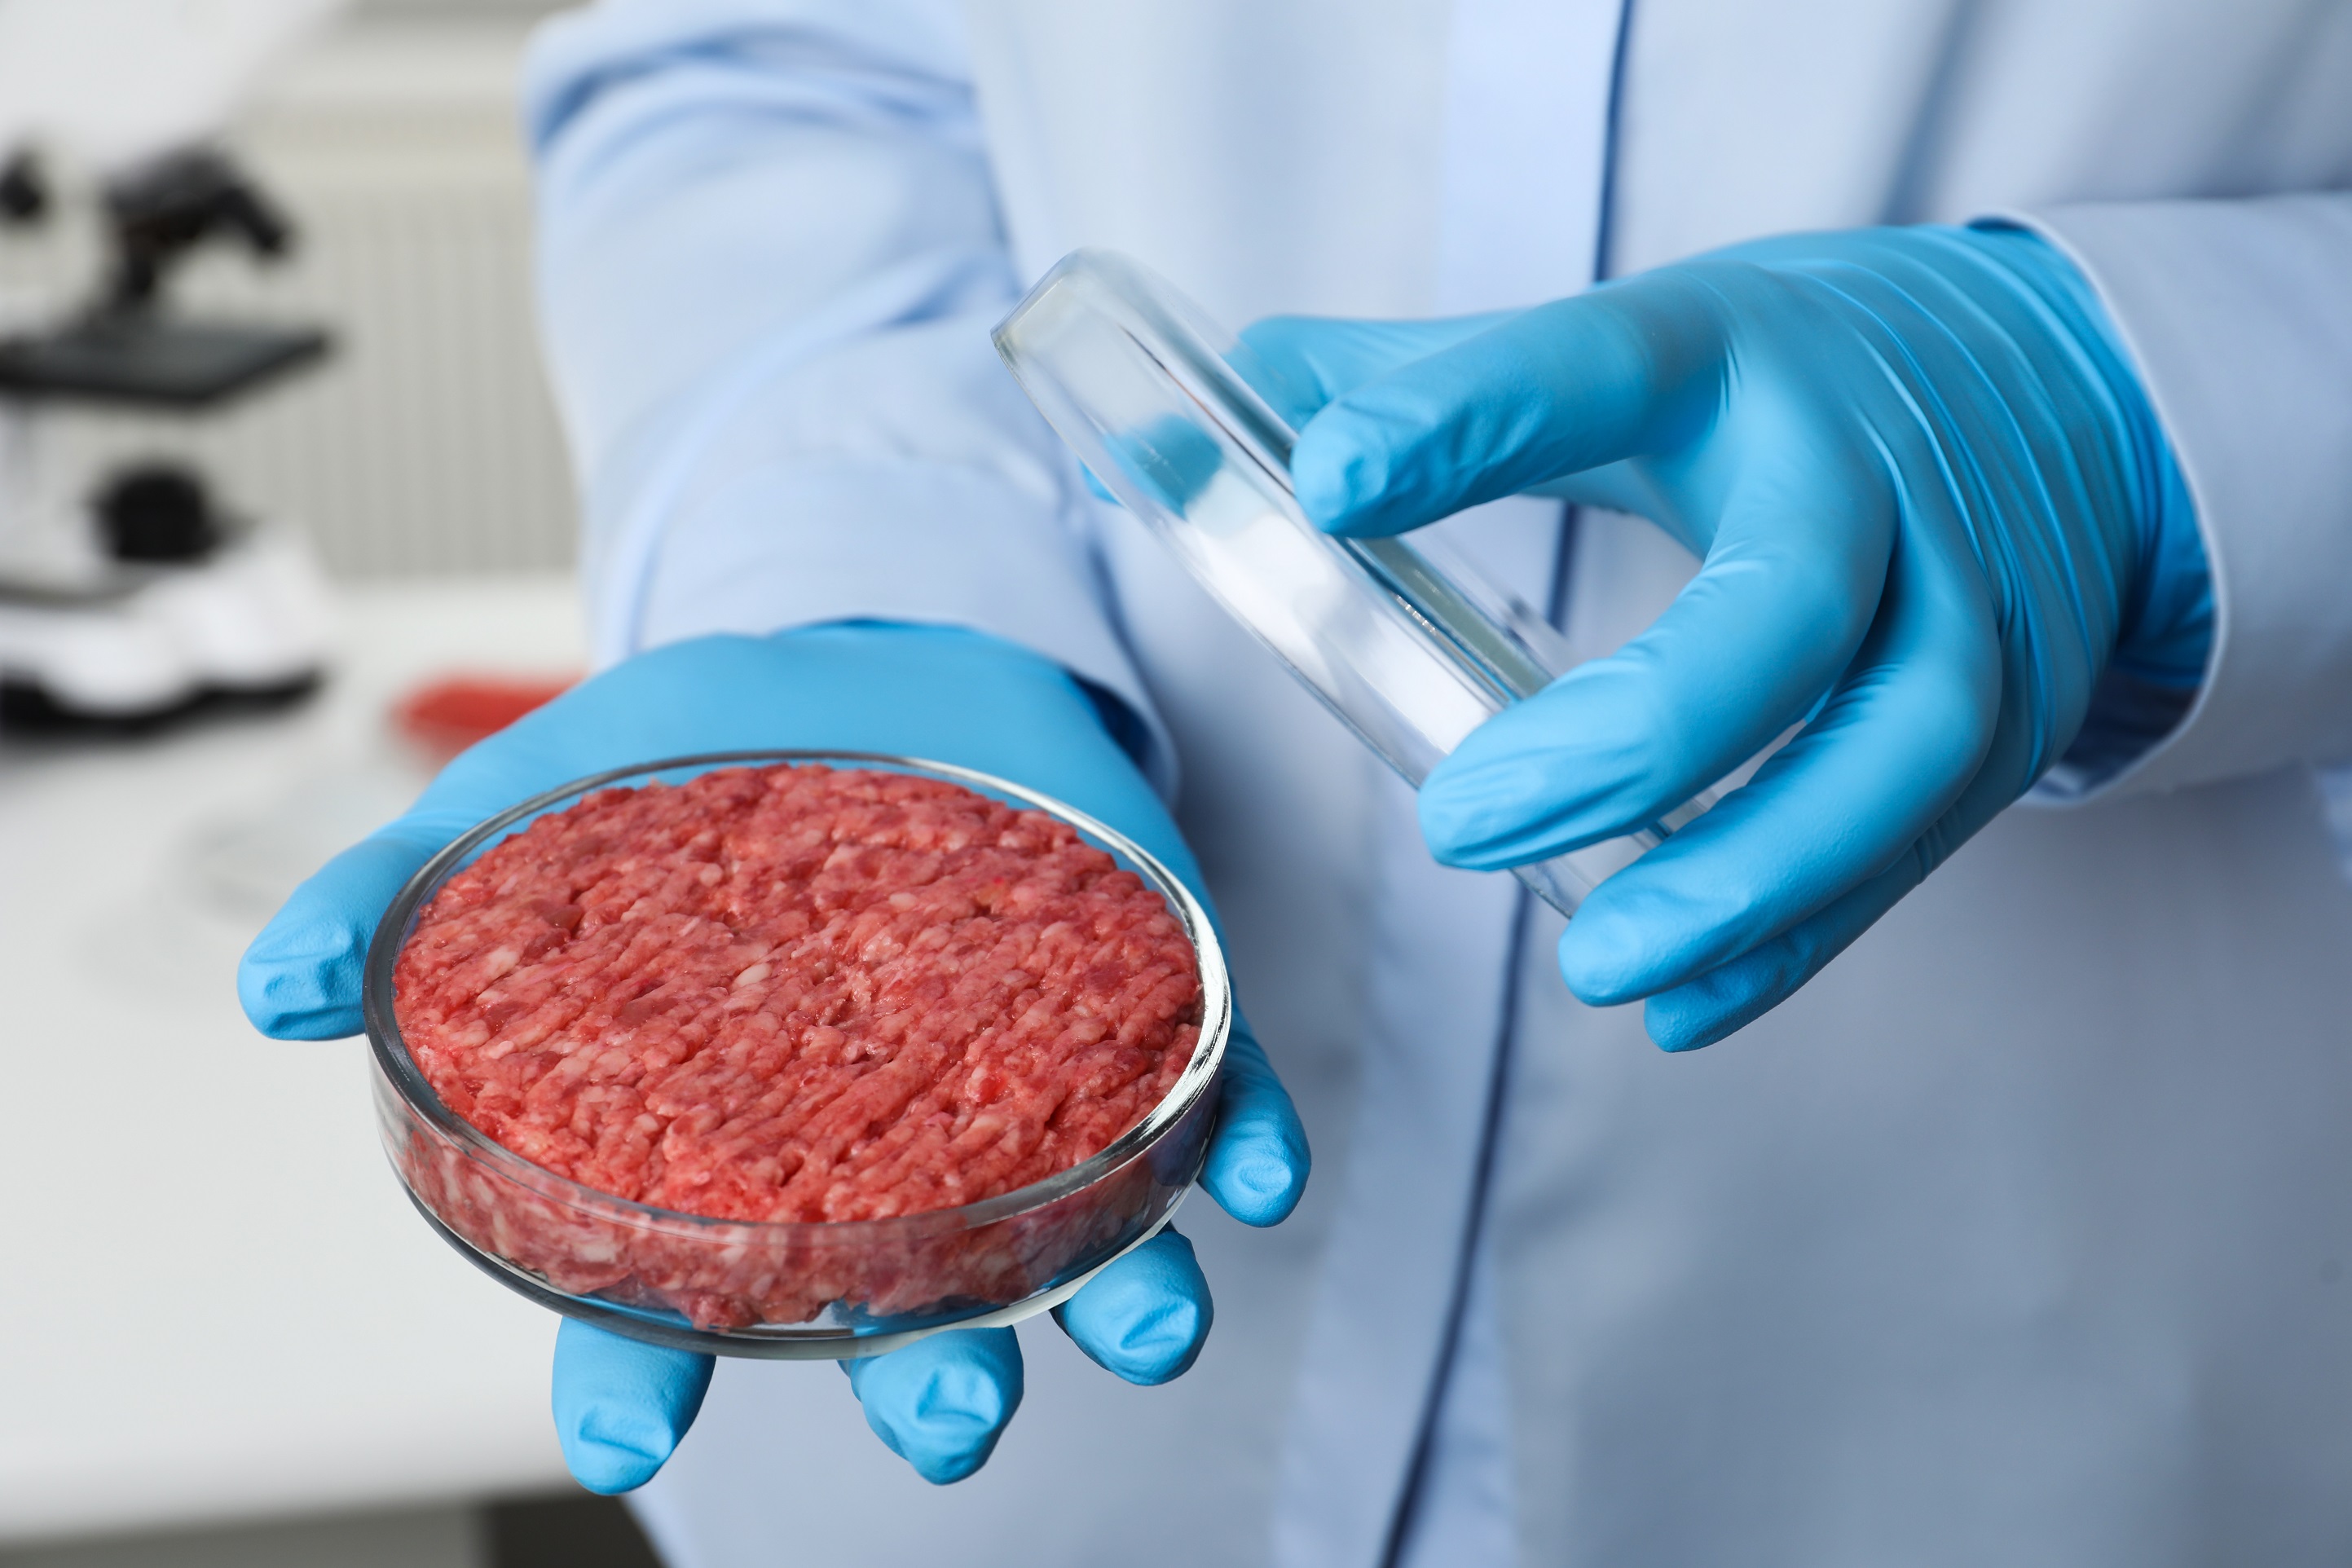 La Suisse sera-t-elle le premier pays d'Europe a autorisé la vente de viande cultivée en laboratoire ? © New Africa, Shutterstock